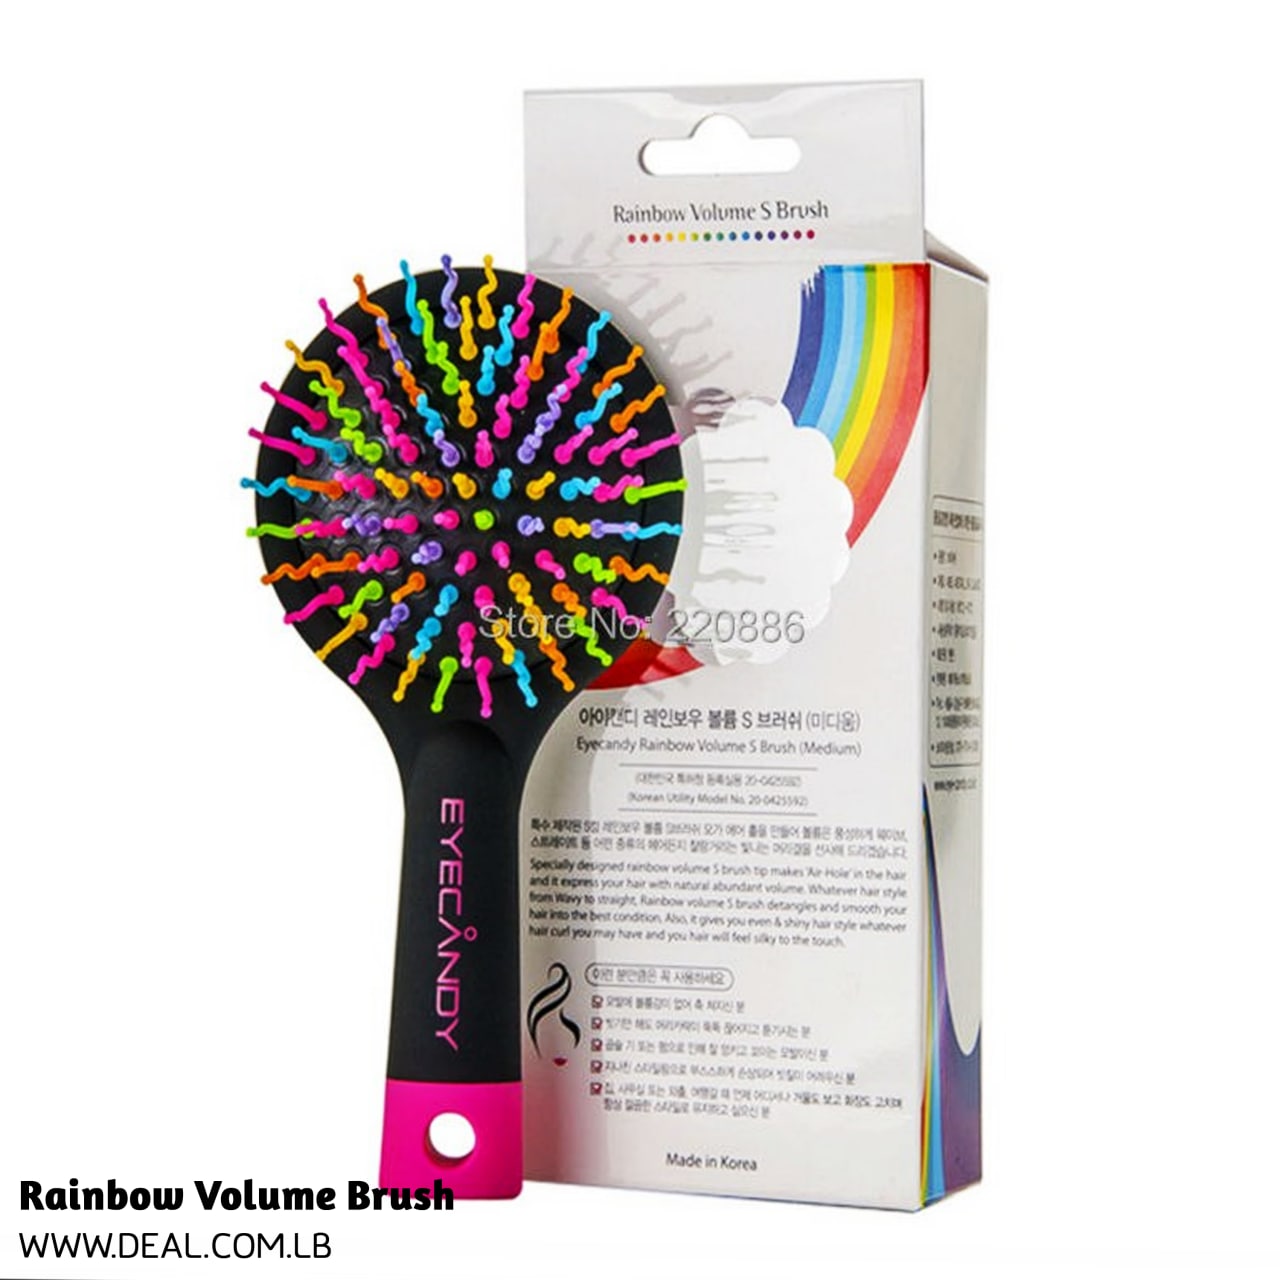 Rainbow Volume Brush